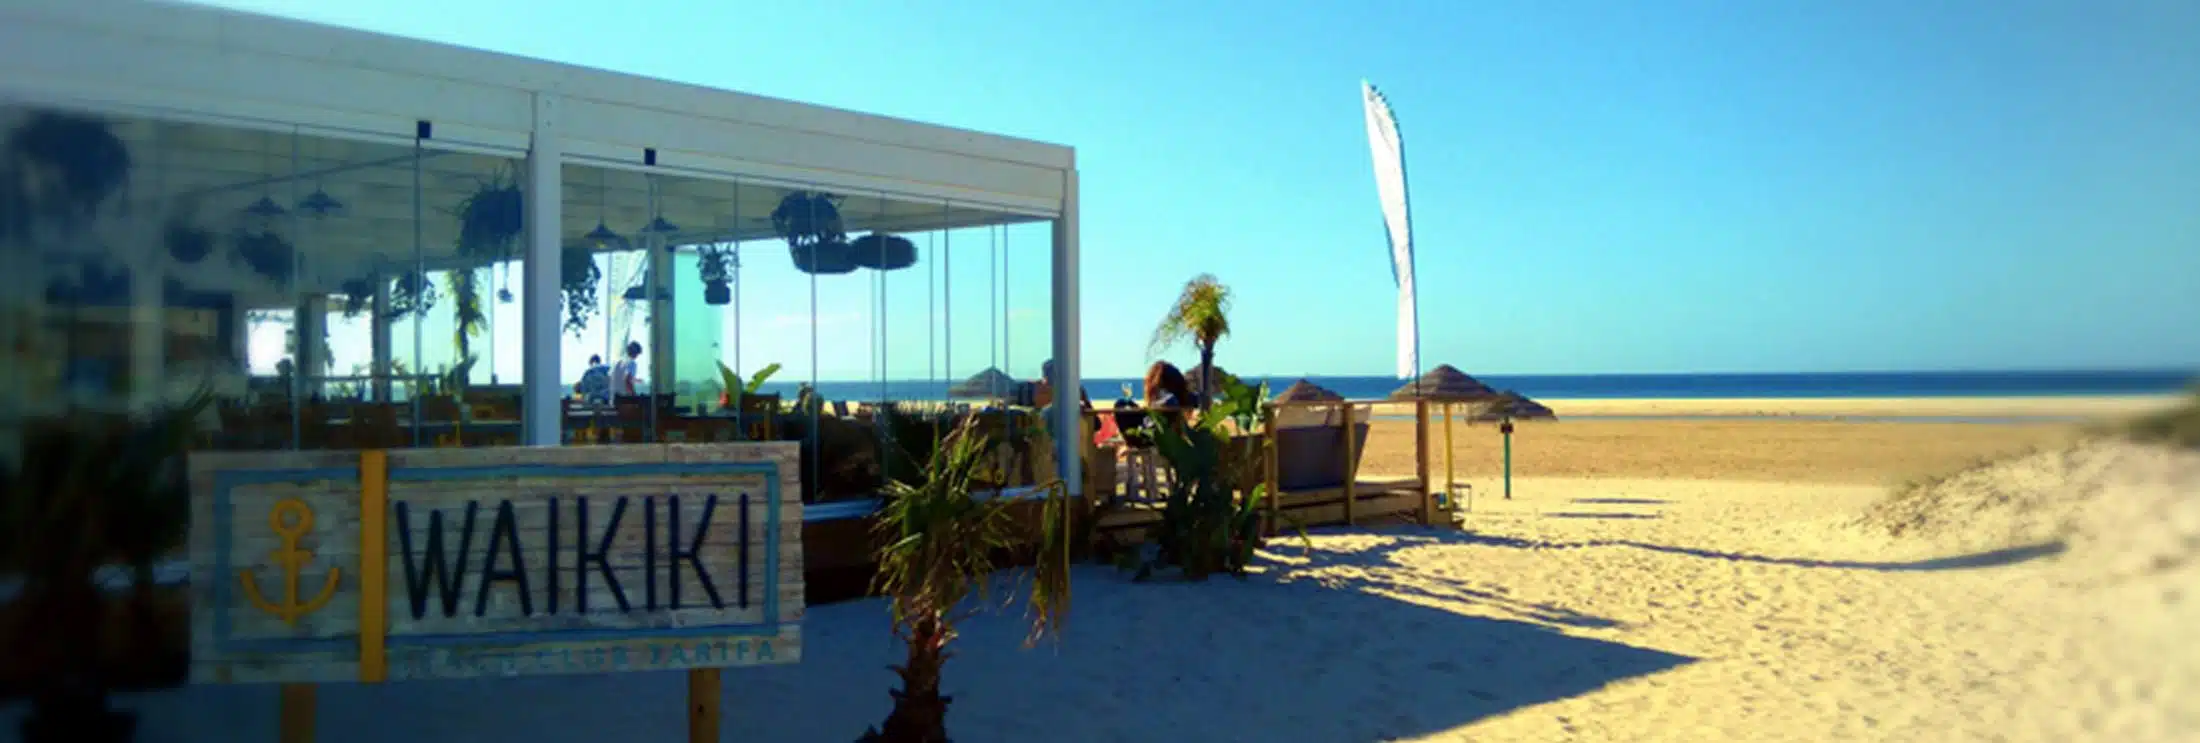 Chiringuito en Tarifa playa Balneario con cocteles, comida y musica